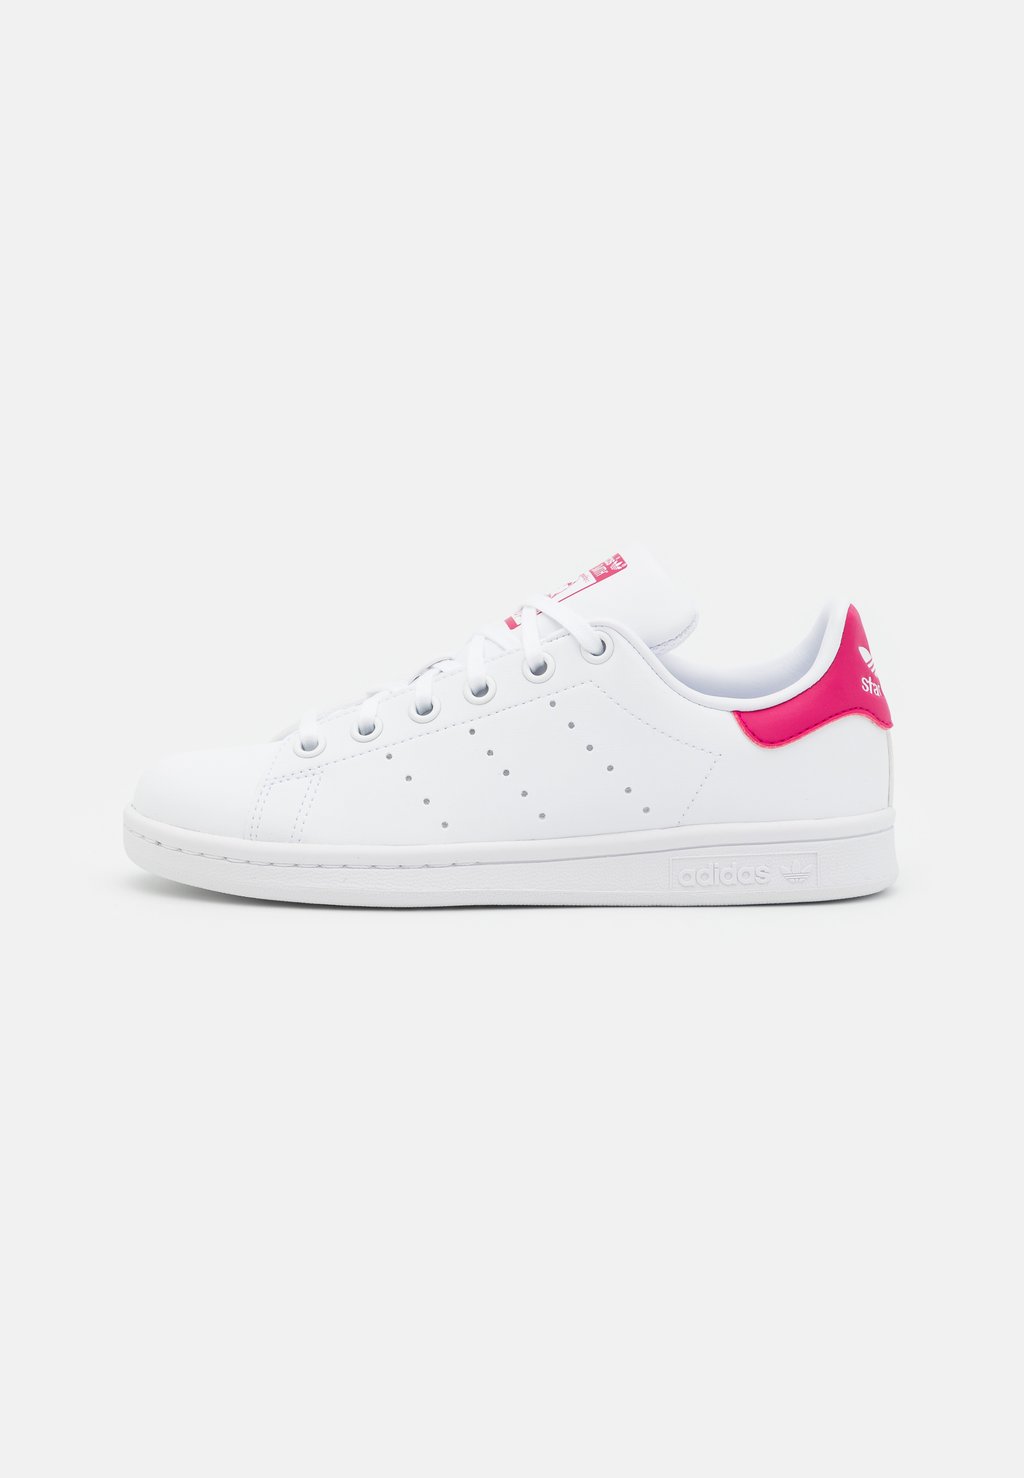 Низкие кроссовки Stan Smith Unisex adidas Originals, цвет footwear white/bold pink